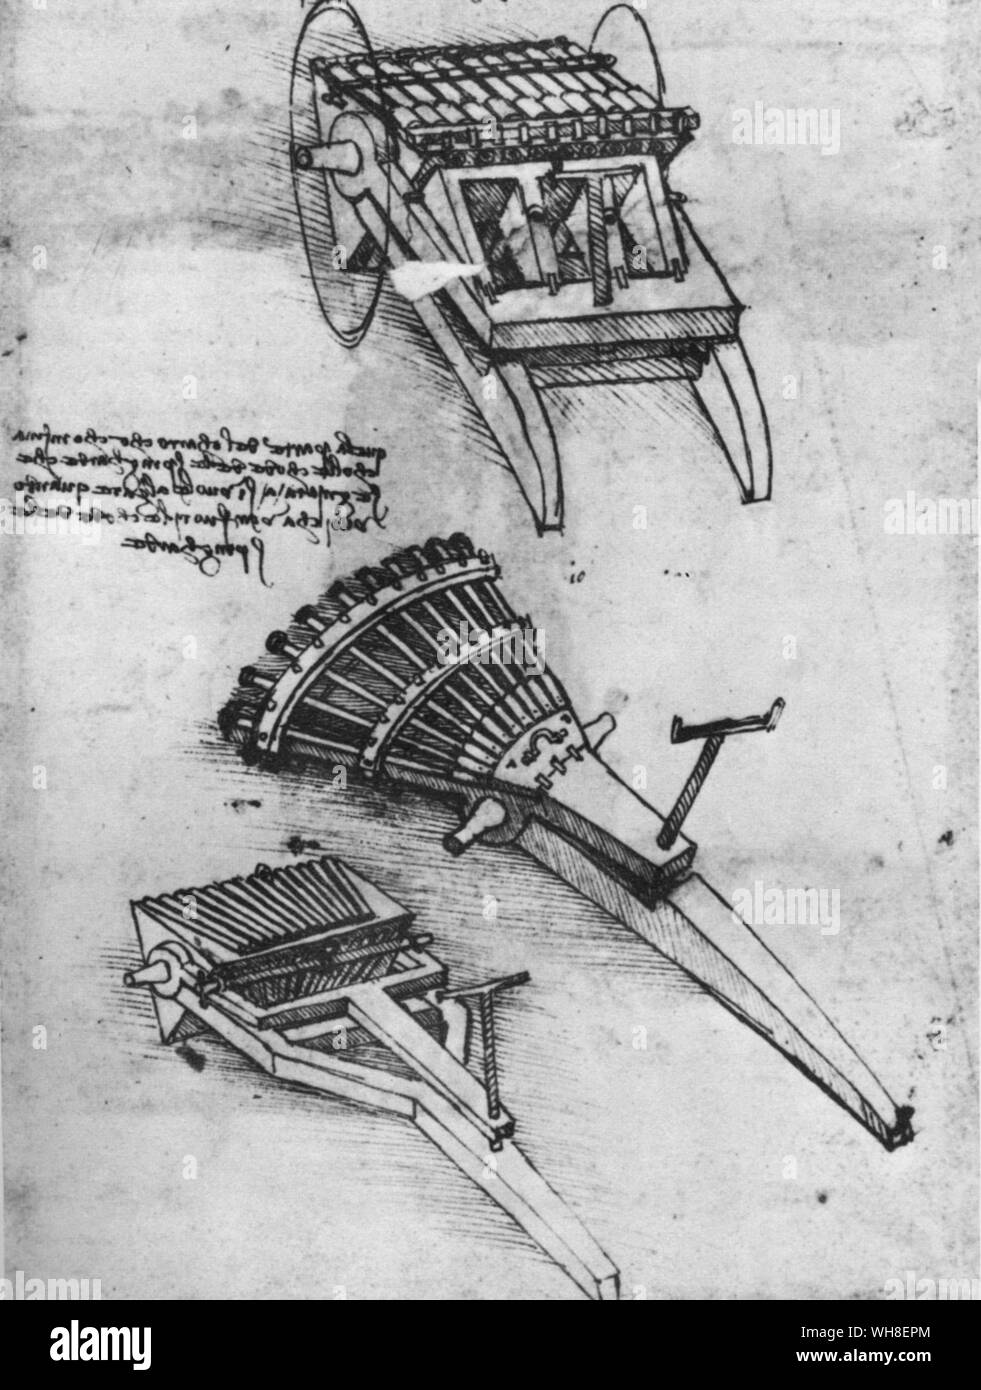 Leonardo's mitrailleuses. Haut de page schéma montre comment les canons d'un même rack peut être déchargée, alors que les canonniers étaient le deuxième chargement rack pour être tourné à l'heure actuelle dans la position d'allumage. La troisième serait en rack jusqu'à être facturés alors que le premier a été de vous rafraîchir. Leonardo da Vinci (1452-1519) était un architecte italien de la Renaissance, musicien, anatomiste, inventeur, ingénieur, géomètre, sculpteur et artiste. . . Banque D'Images